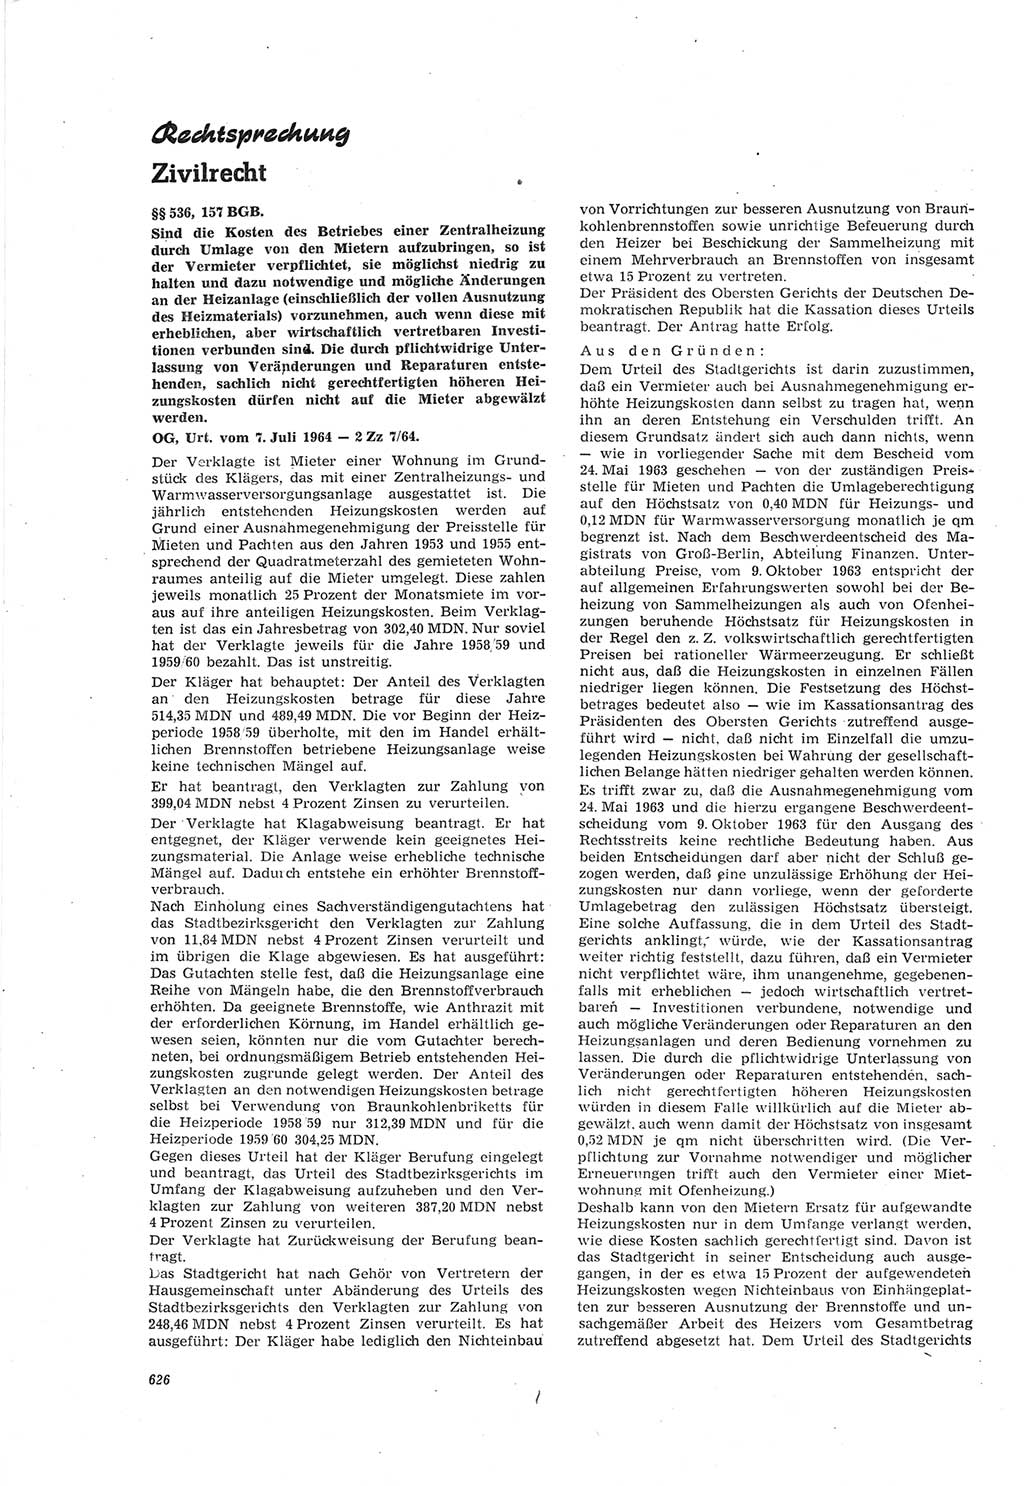 Neue Justiz (NJ), Zeitschrift für Recht und Rechtswissenschaft [Deutsche Demokratische Republik (DDR)], 18. Jahrgang 1964, Seite 626 (NJ DDR 1964, S. 626)